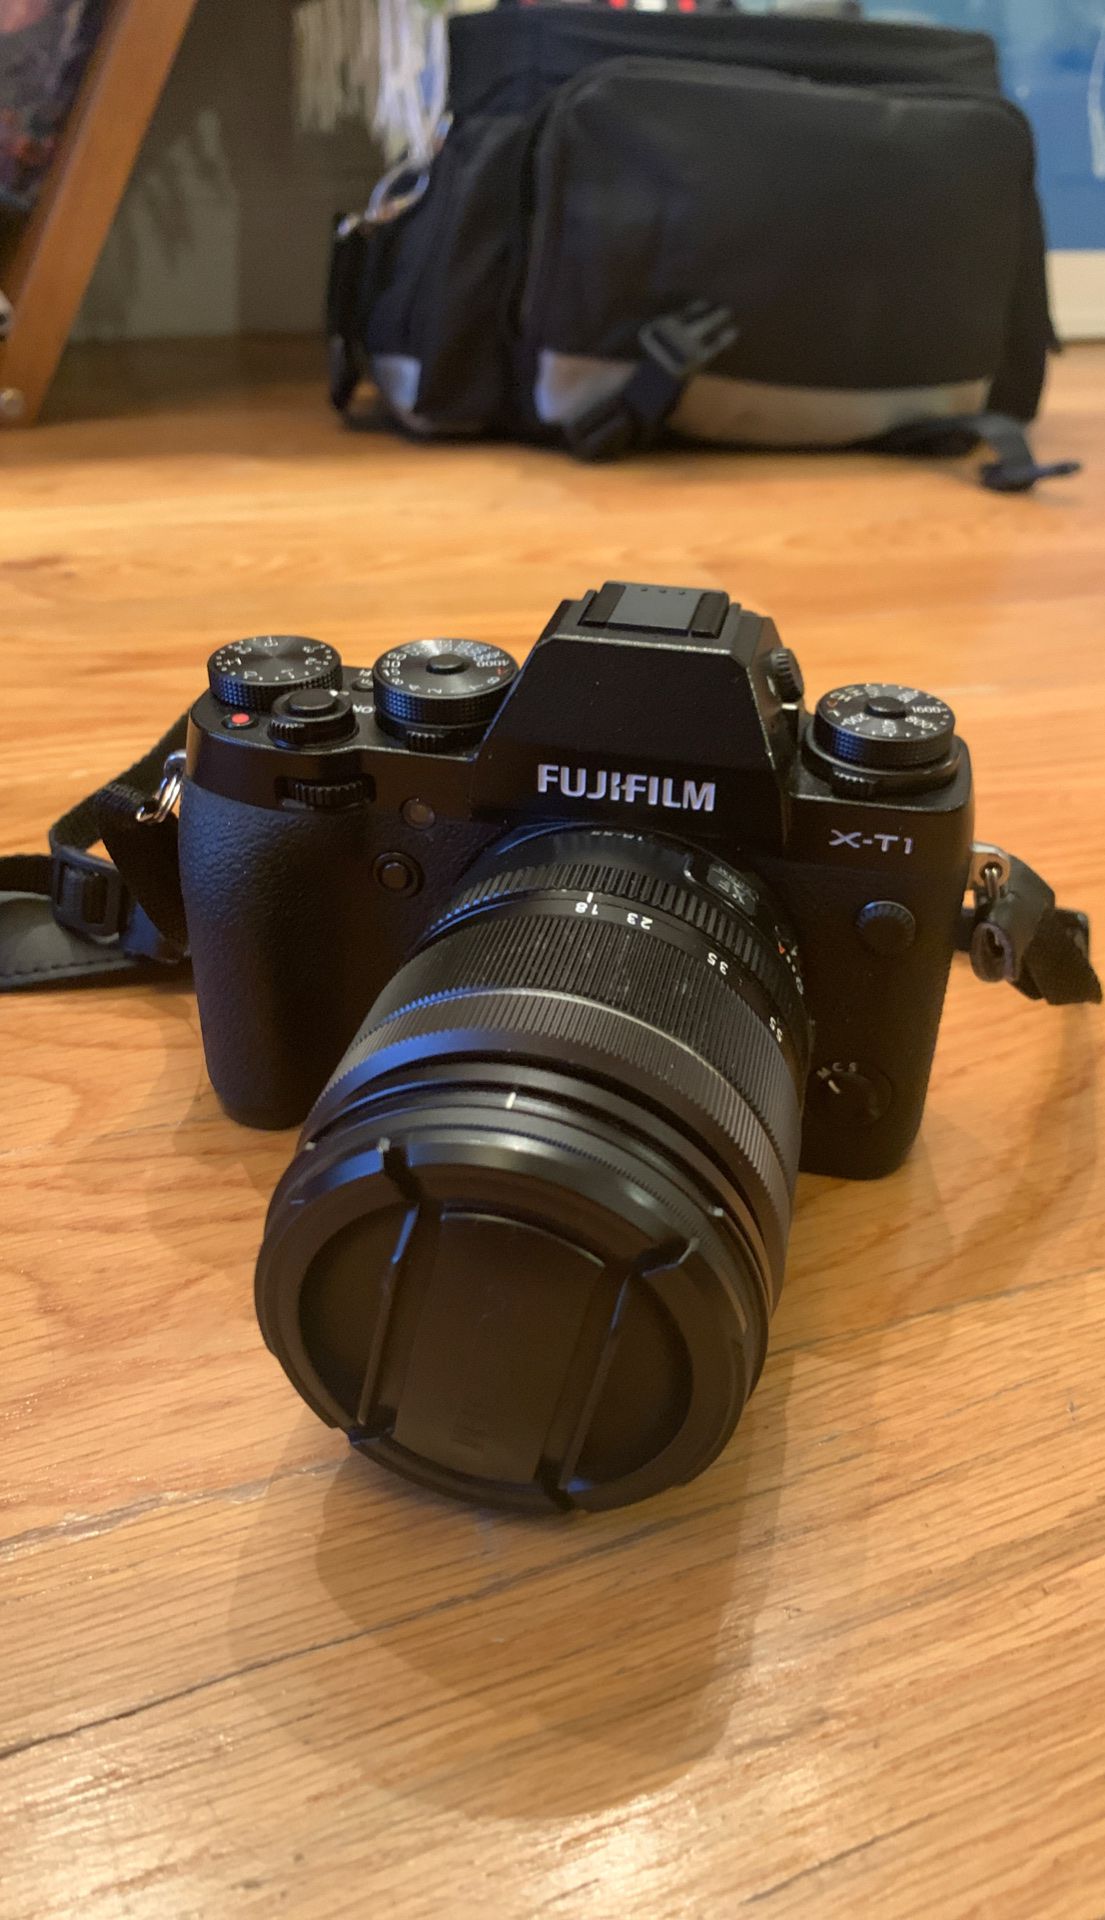 Fuji X-T1 camera w/ fujinon 18-55mm lens